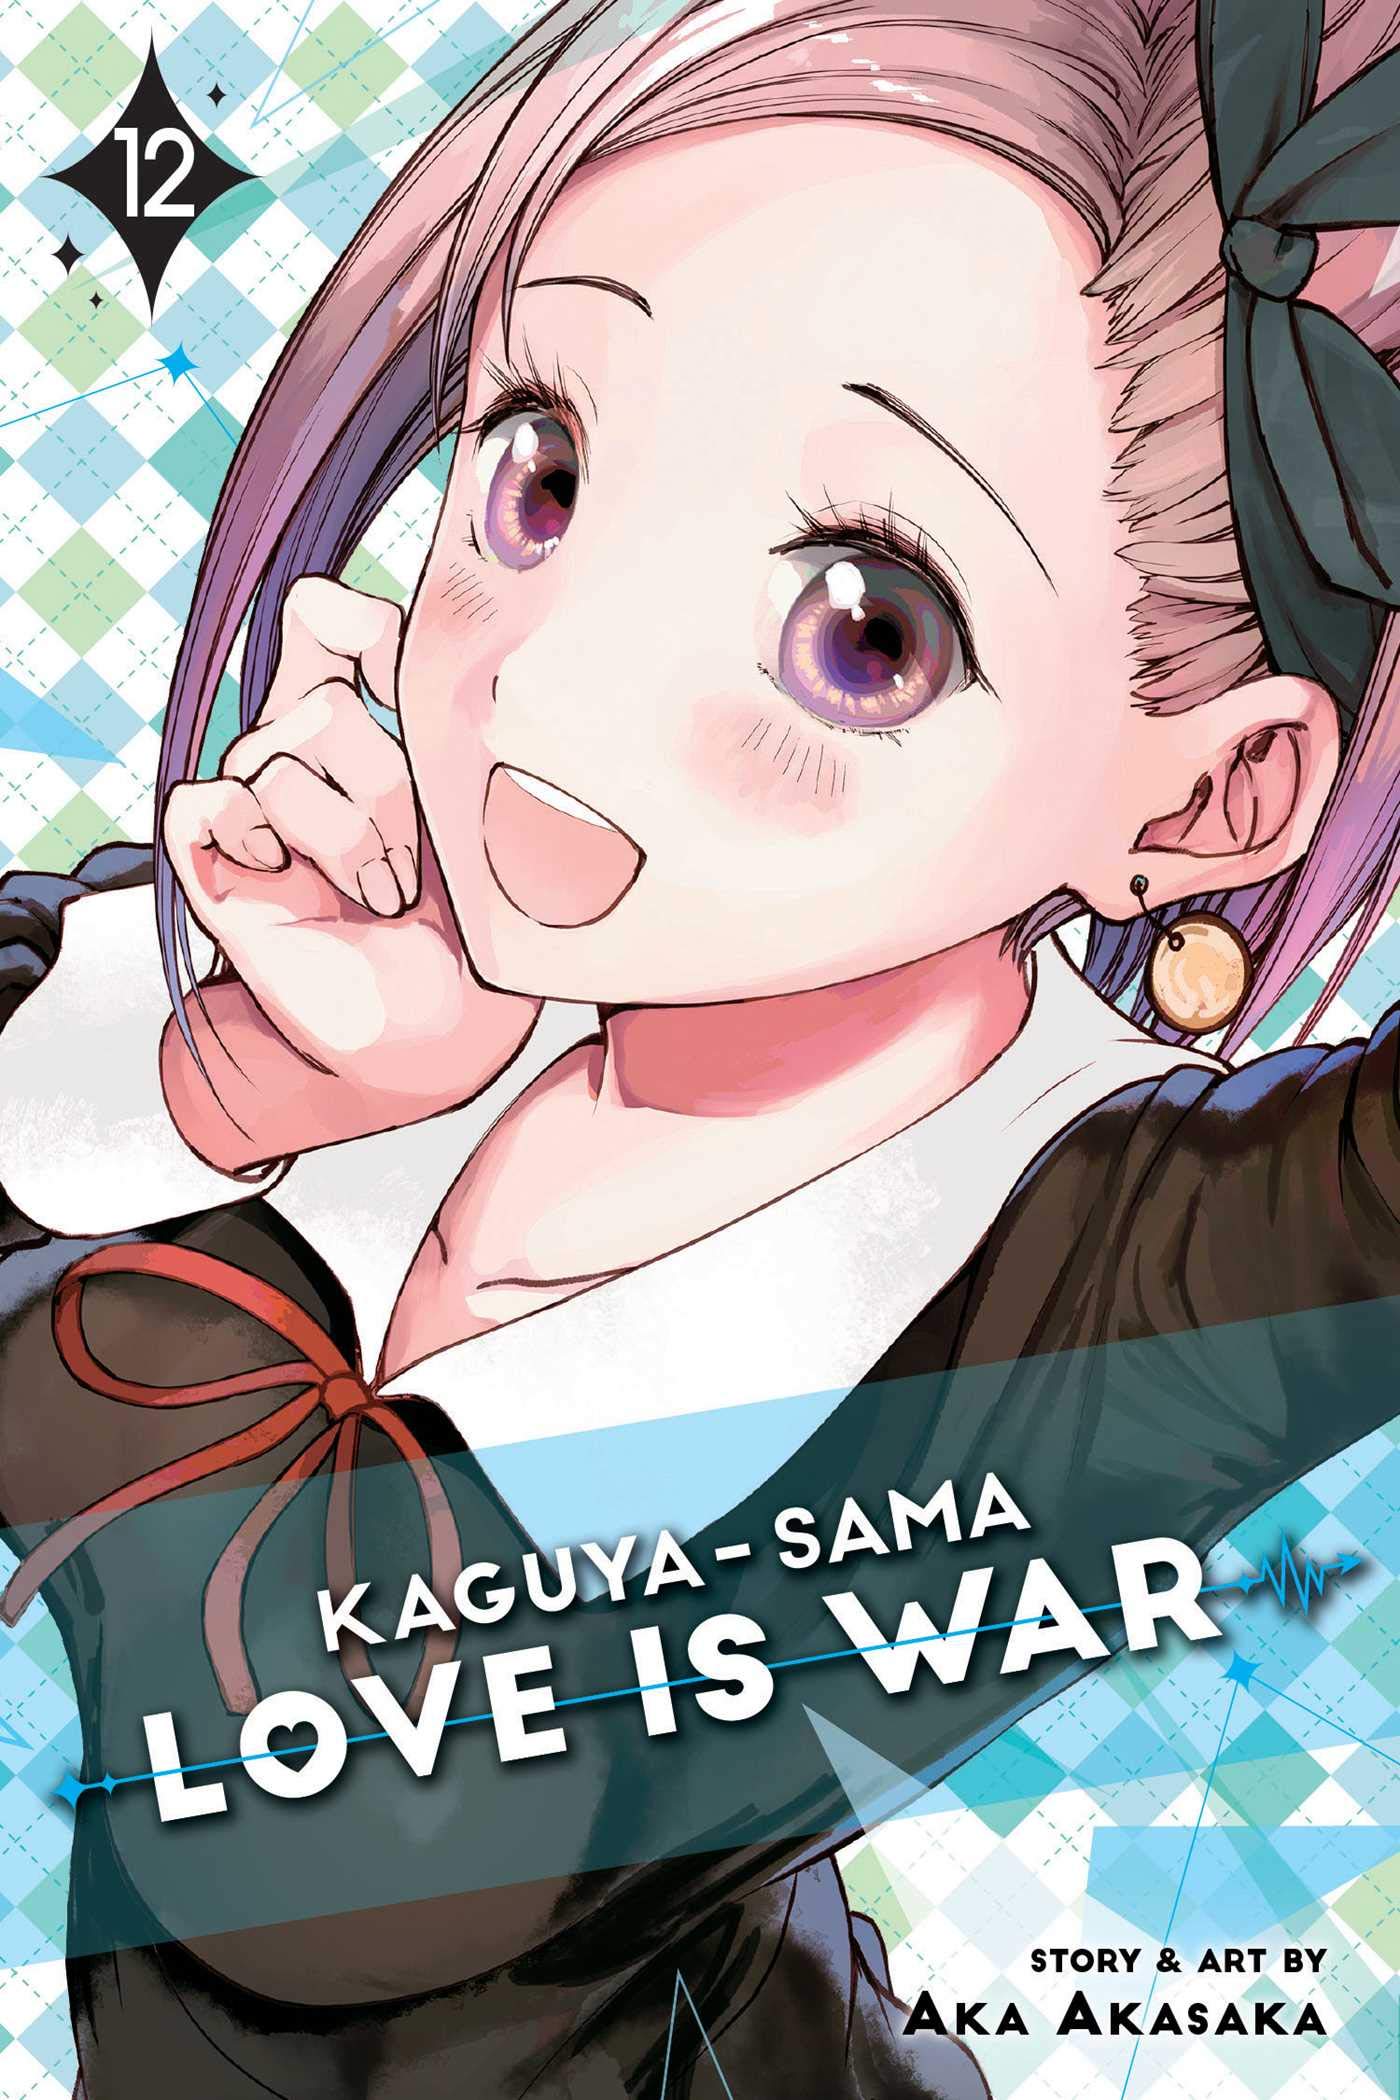 Kaguya-sama: Love Is War, Vol. 12 | Aka Akasaka